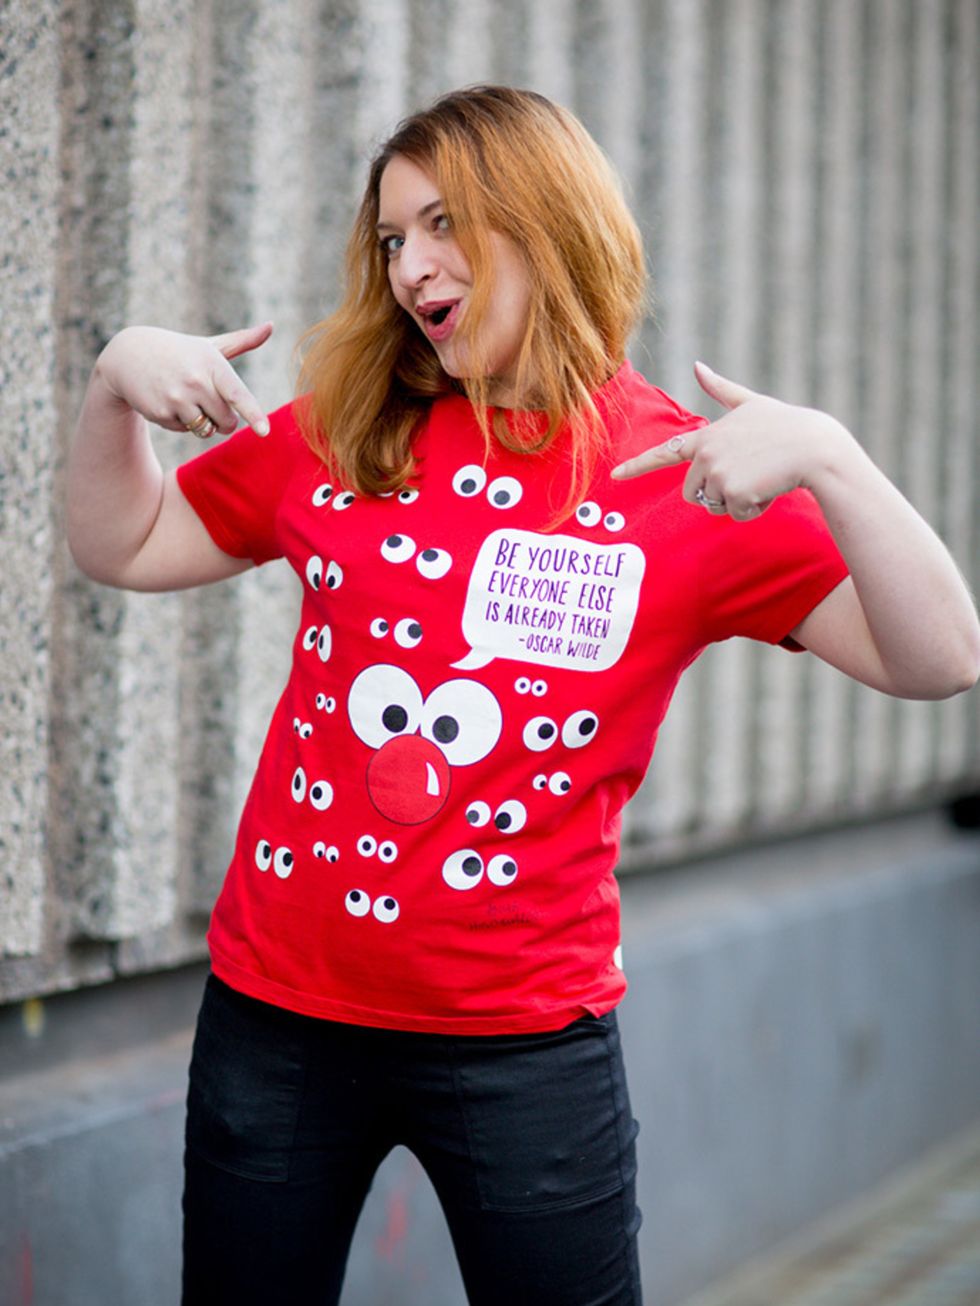 <p>Natasha Pearlman  Deputy Editor.</p>

<p>Anya Hindmarch Red Nose Day T-shirt. </p>